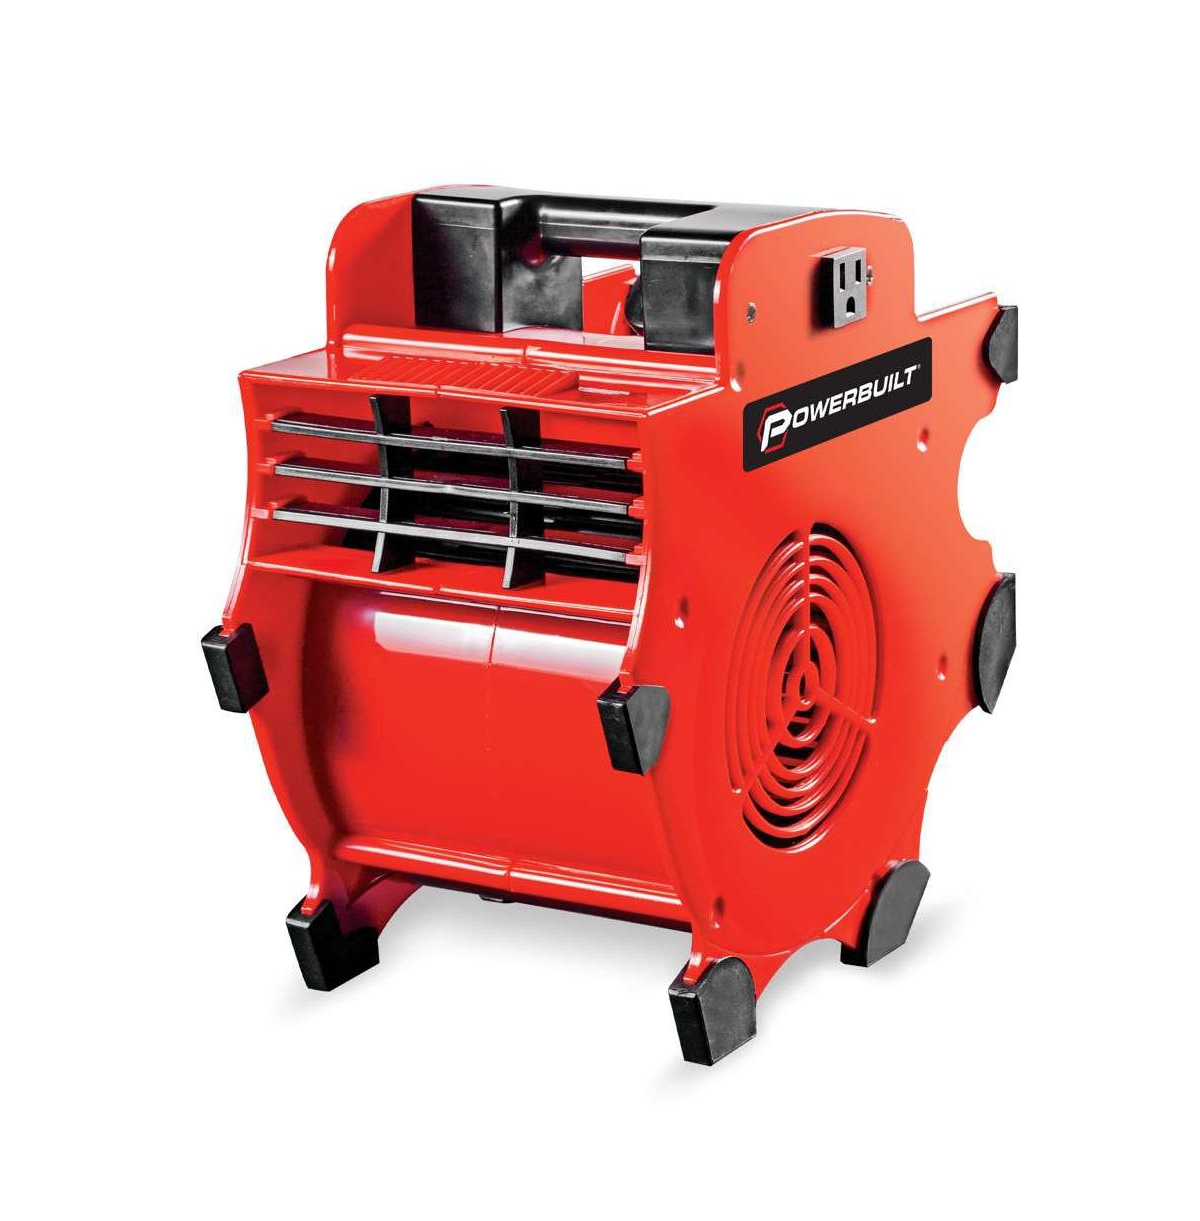 3 Speed Portable Blower Dryer Fan - Red